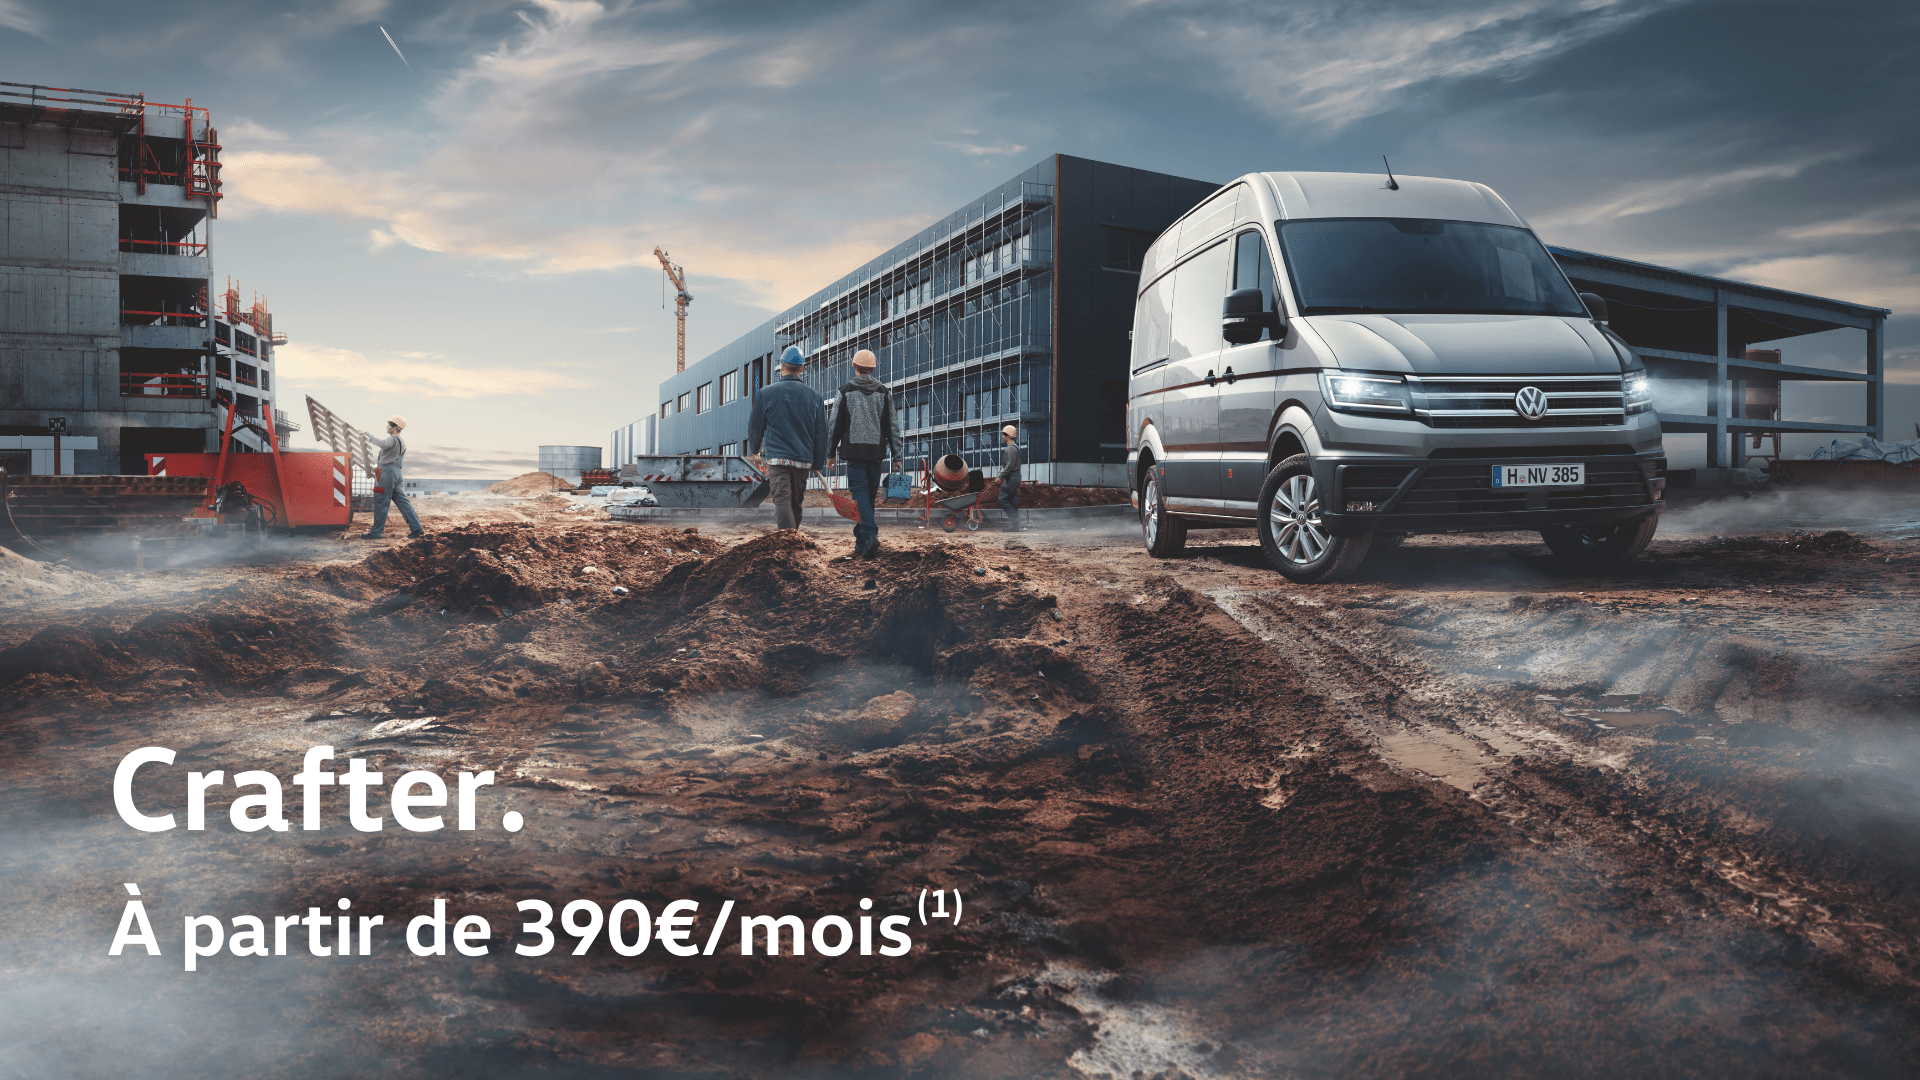 Riviera Technic - Volkswagen Utilitaires Mandelieu - Profitez d'une offre exceptionnelle sur le Crafter, à partir de 390€/mois(1)